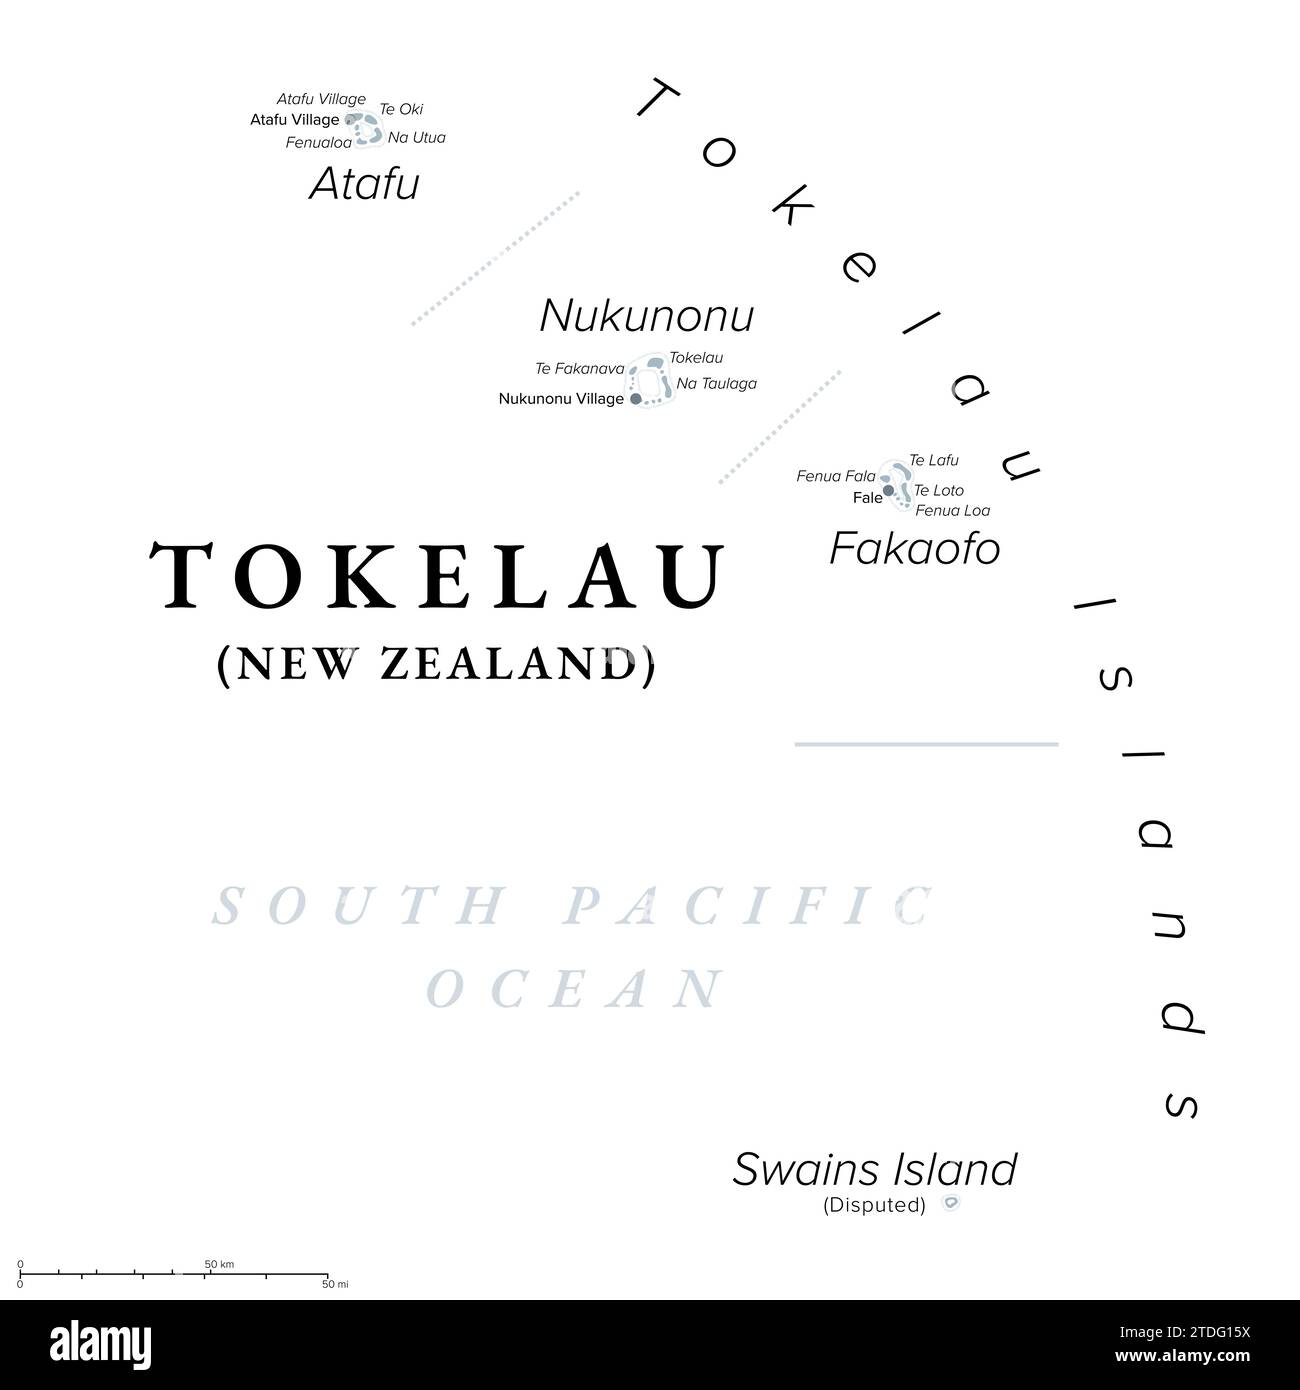 Tokelau, abhängiges Territorium Neuseelands, politische Karte. Südpazifischer Archipel bestehend aus tropischen Korallenatollen Atafu, Nukunonu und Fakaofo. Stockfoto